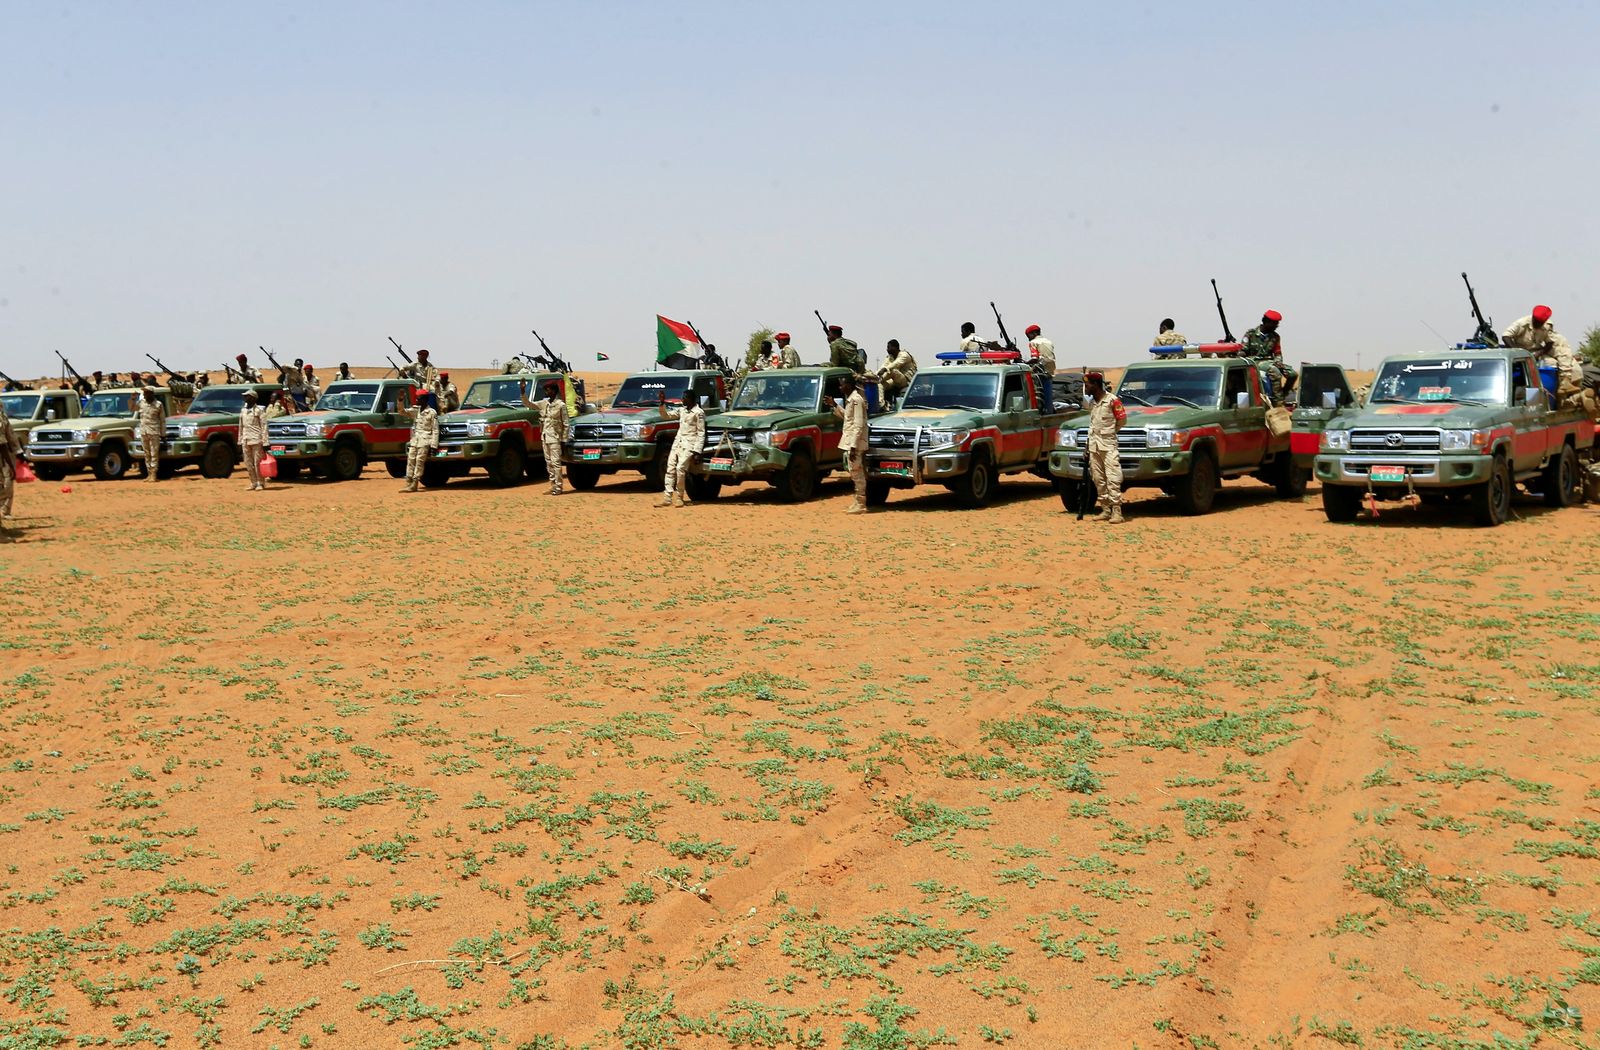 قوات سودانية خلال عملية لاعتقال مهاجرين غير نظاميين من إثيوبيا في منطقة حدودية، سبتمبر 2019 - REUTERS